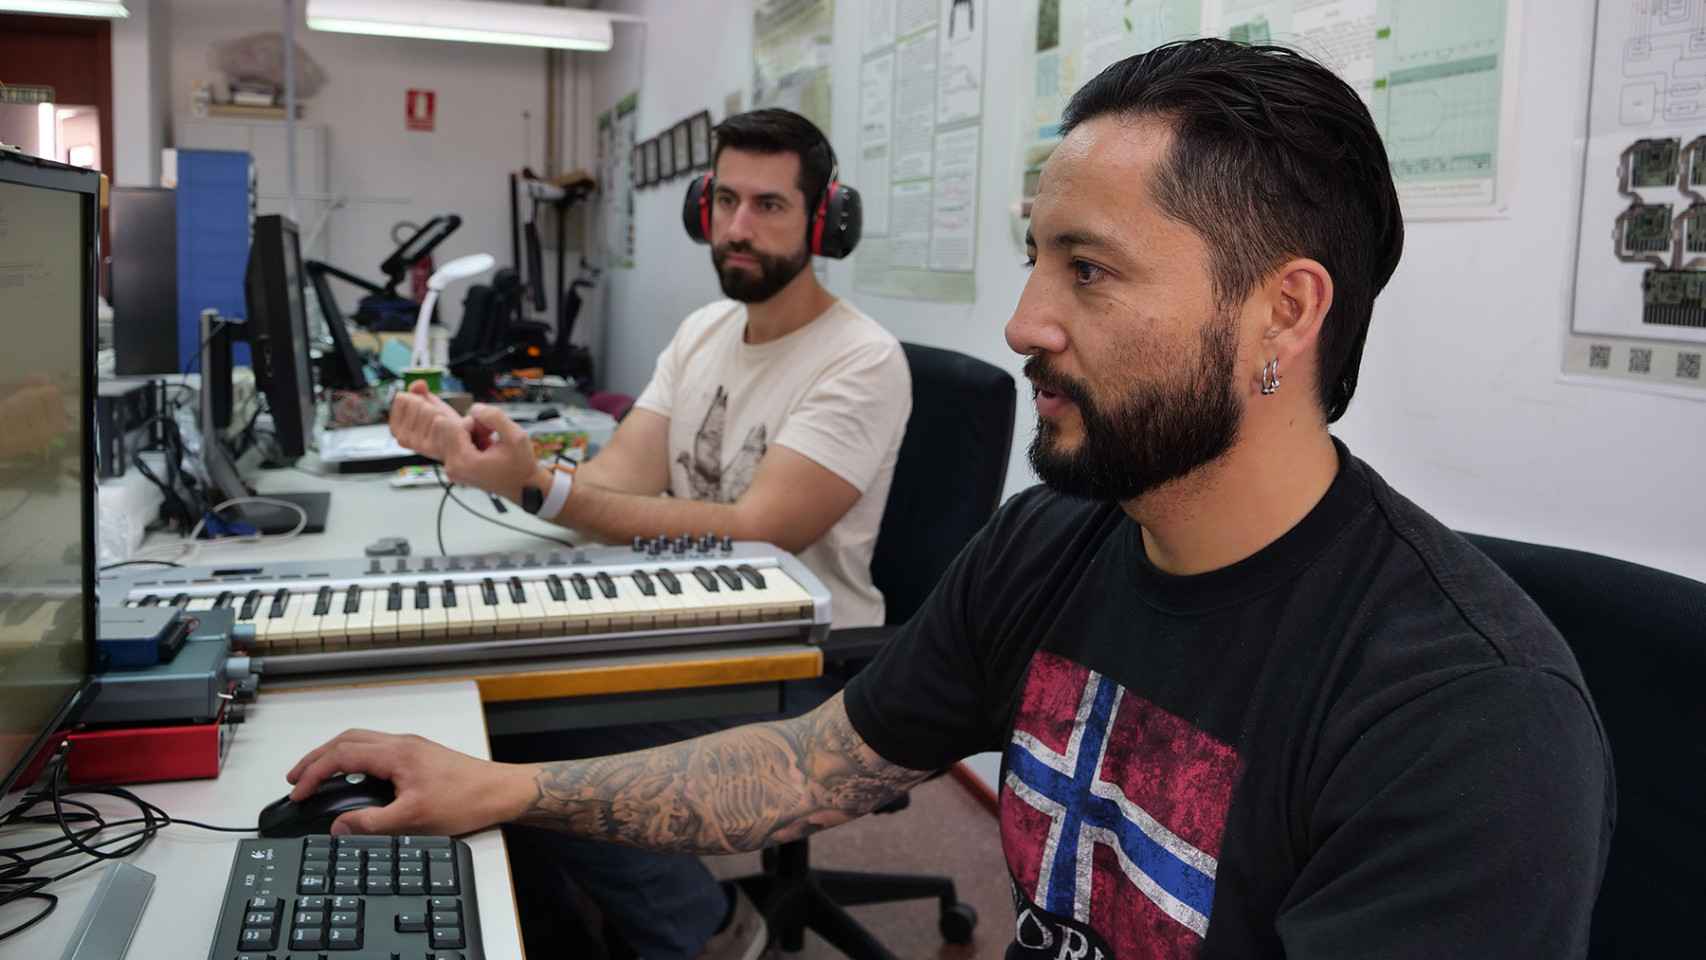 Paul Remache y Andrés Trujillo-León probando el dispositivo audio-táctil